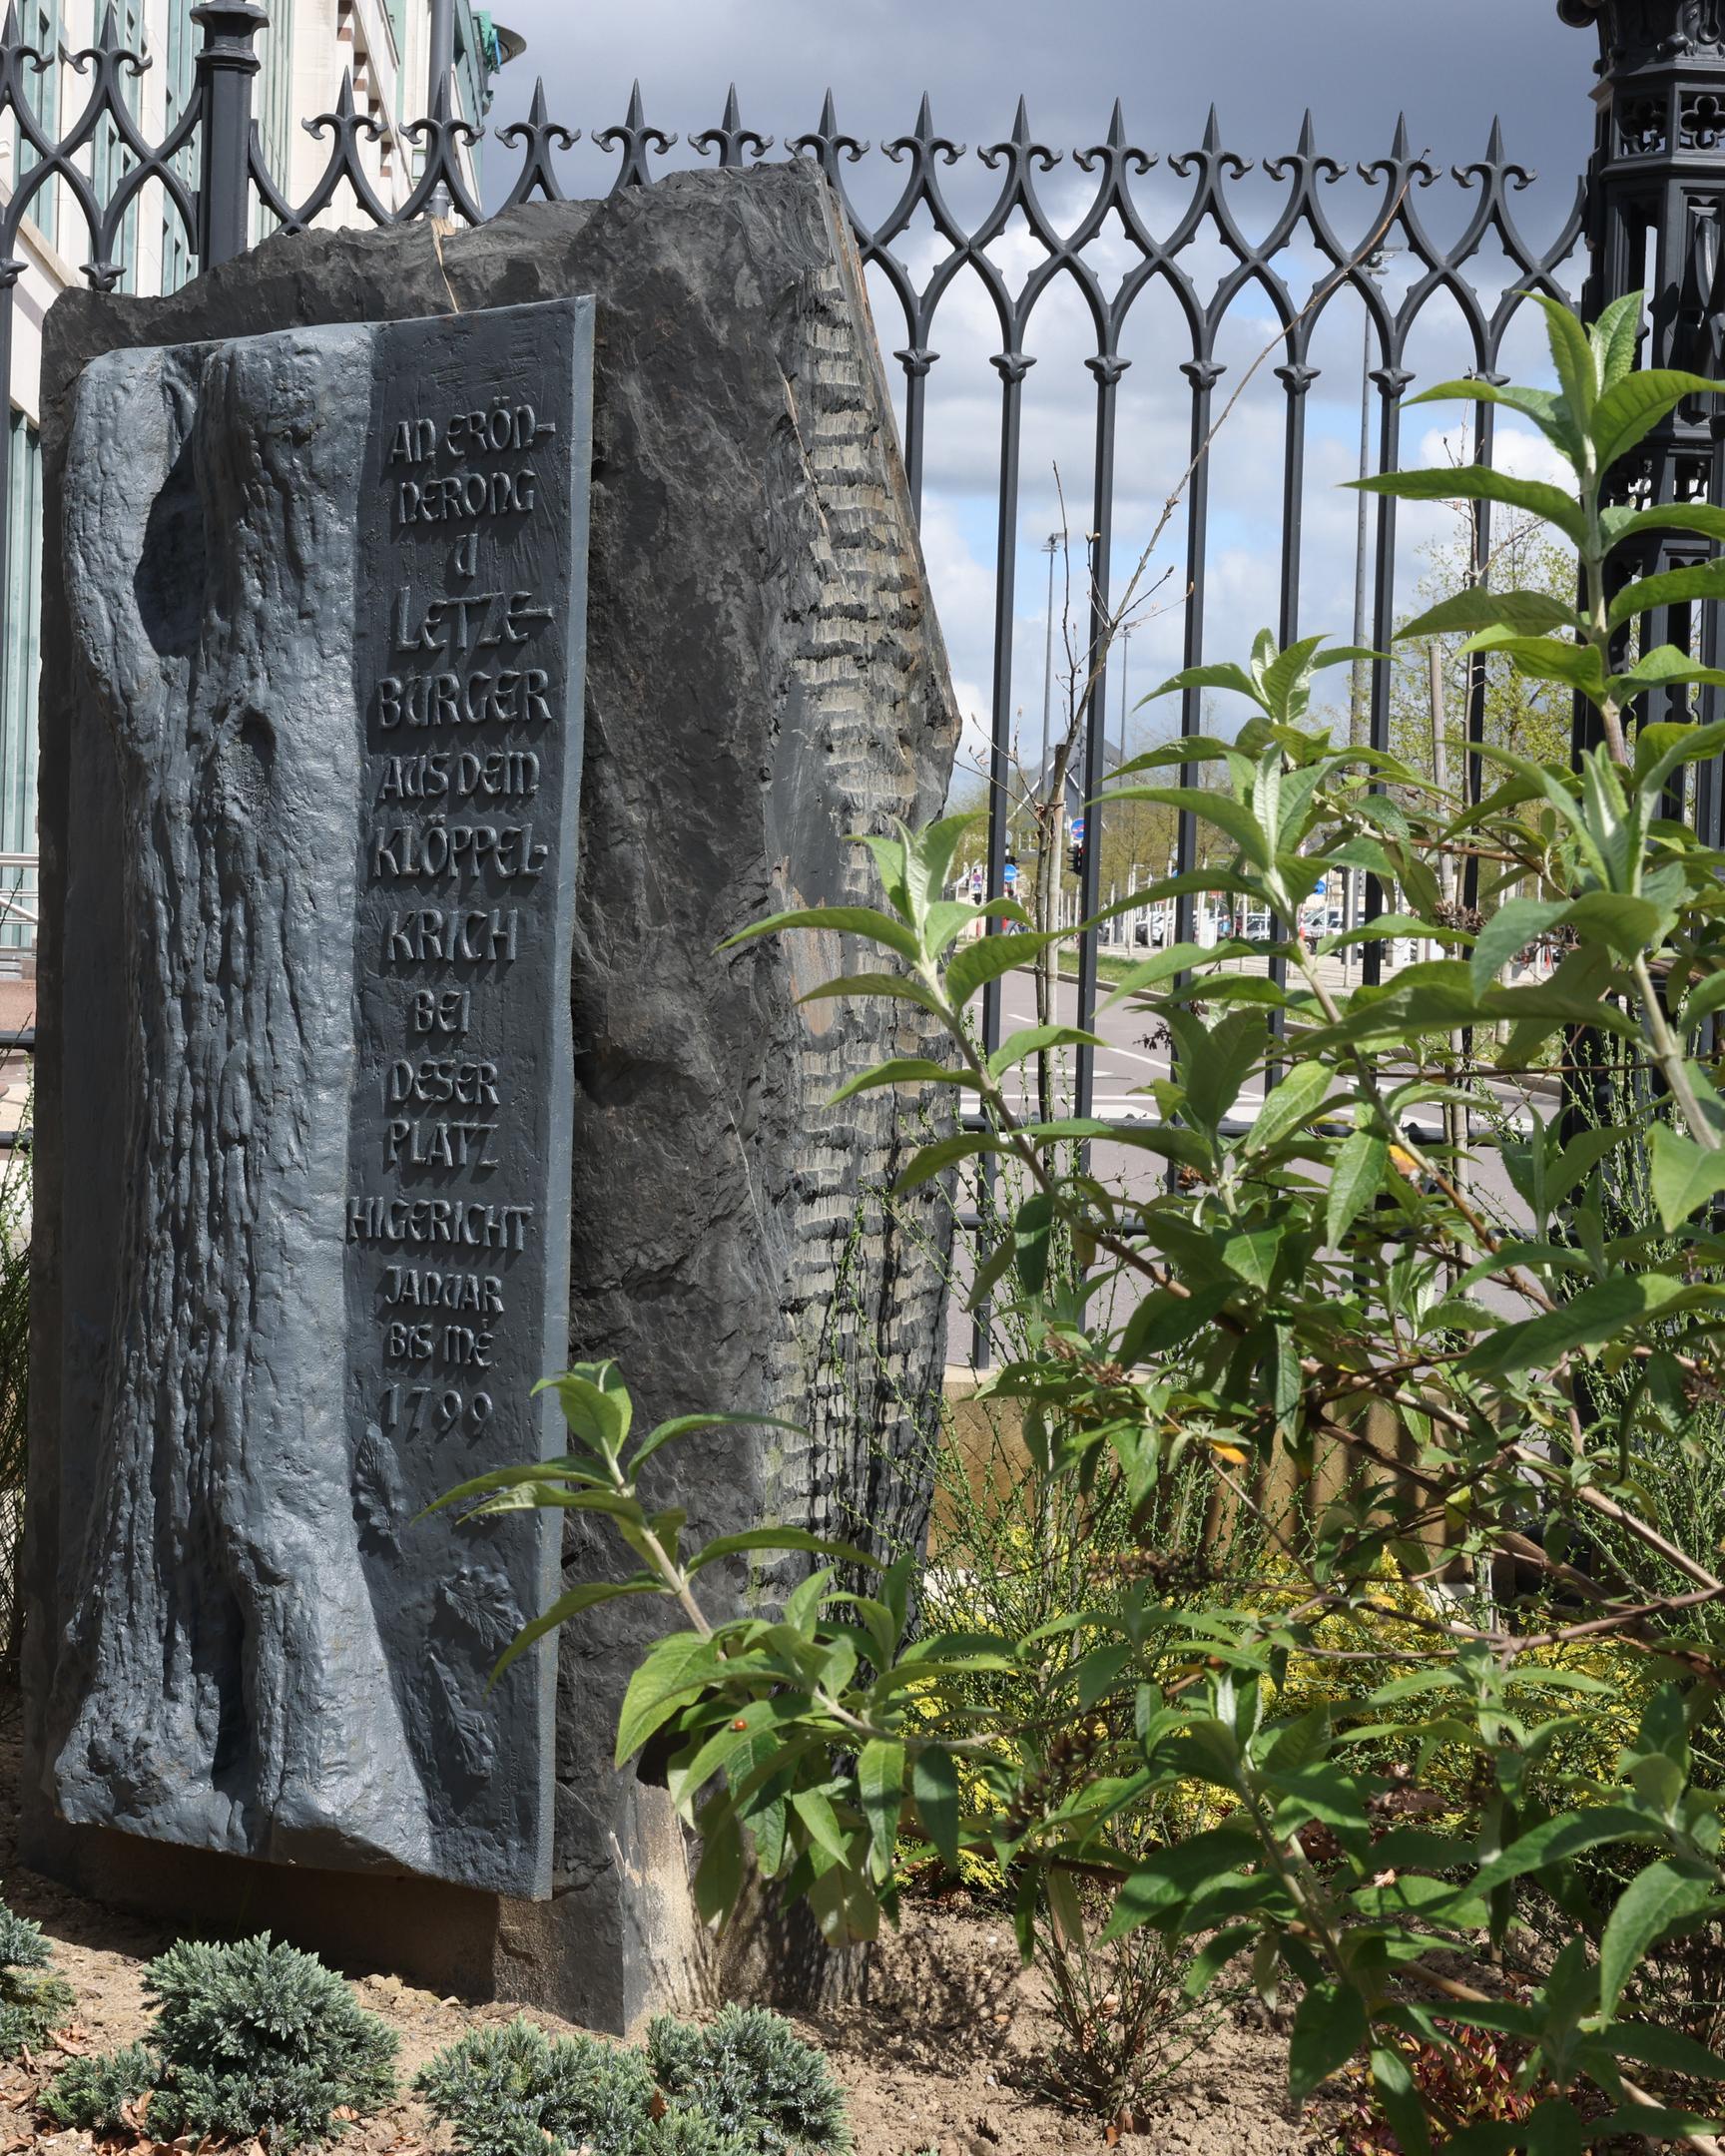 Das Klöppelkrieg-Denkmal nahe dem Glacis erinnert an die dort vor 225 Jahren hingerichteten Klöppelkrieger. Zur Frage nach der Gestaltung des Andenkens an die Erhebung gibt es unterschiedliche Sichtweisen.